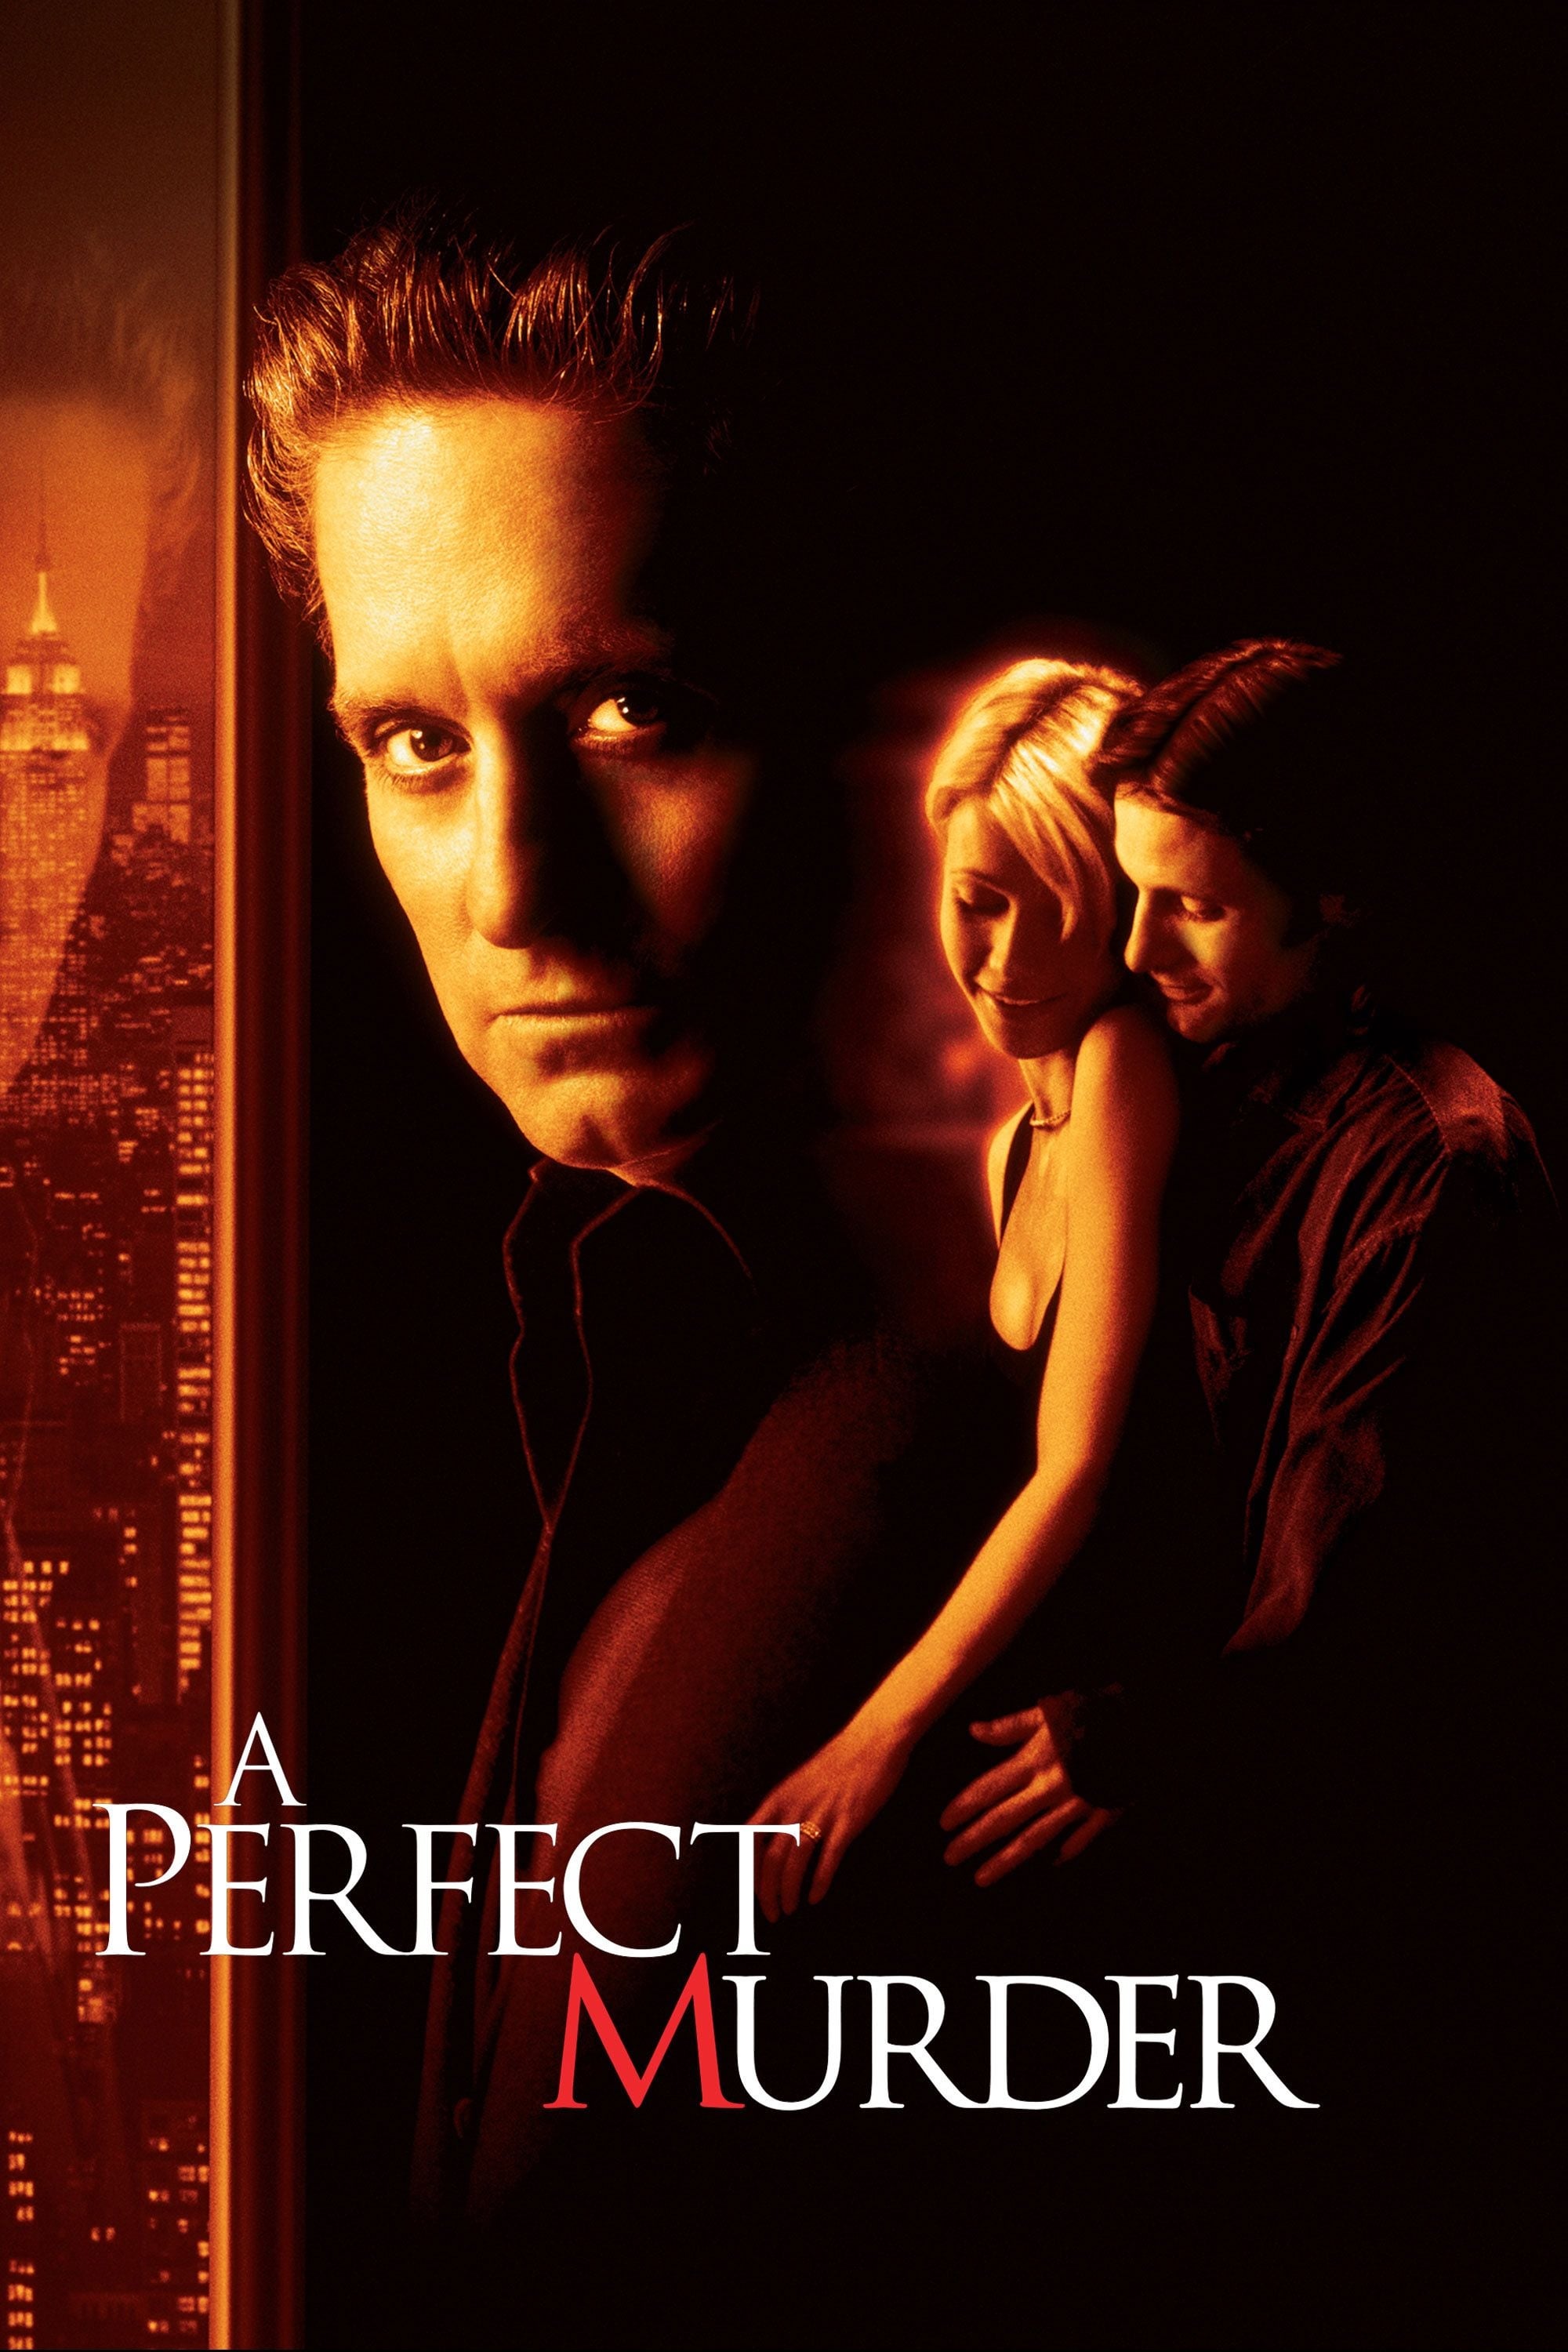 Ein perfekter Mord (1998)